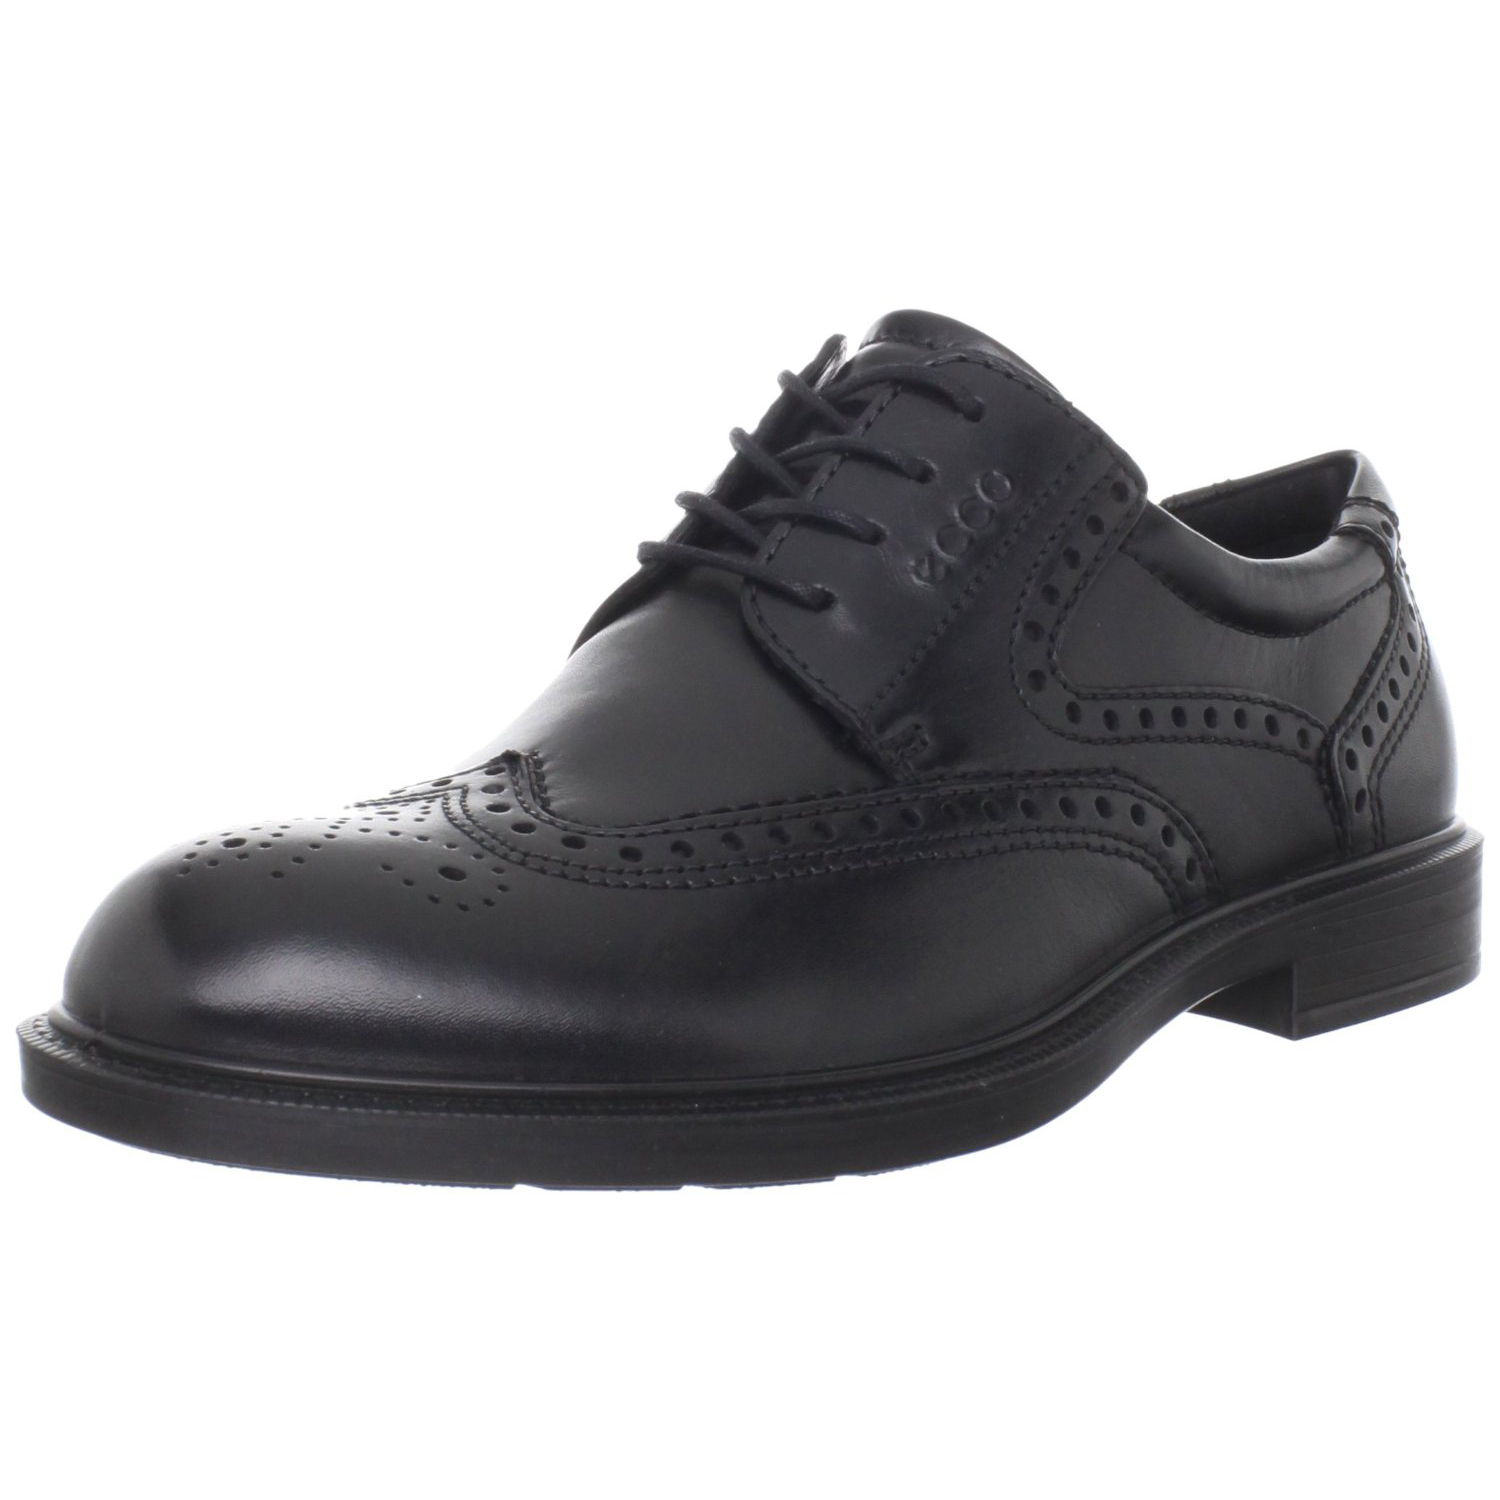 爱步 ECCO Atlanta Wing Tip 男士系带皮鞋  $107.44（使用鞋类订阅8折优惠，仅$85.95）